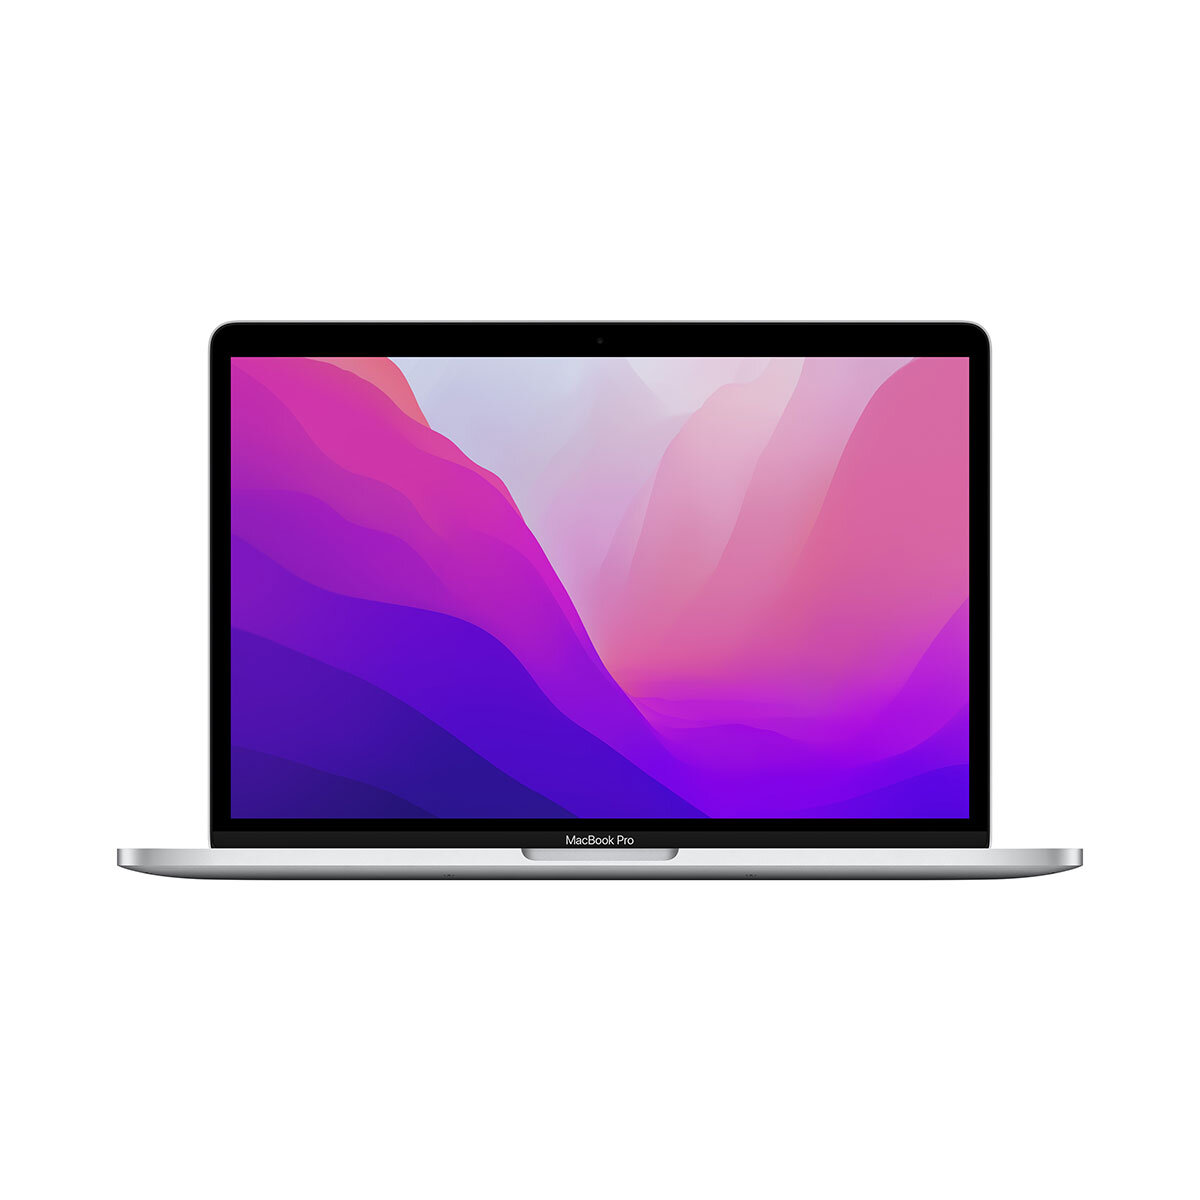 MacBook Pro 13.3inch.